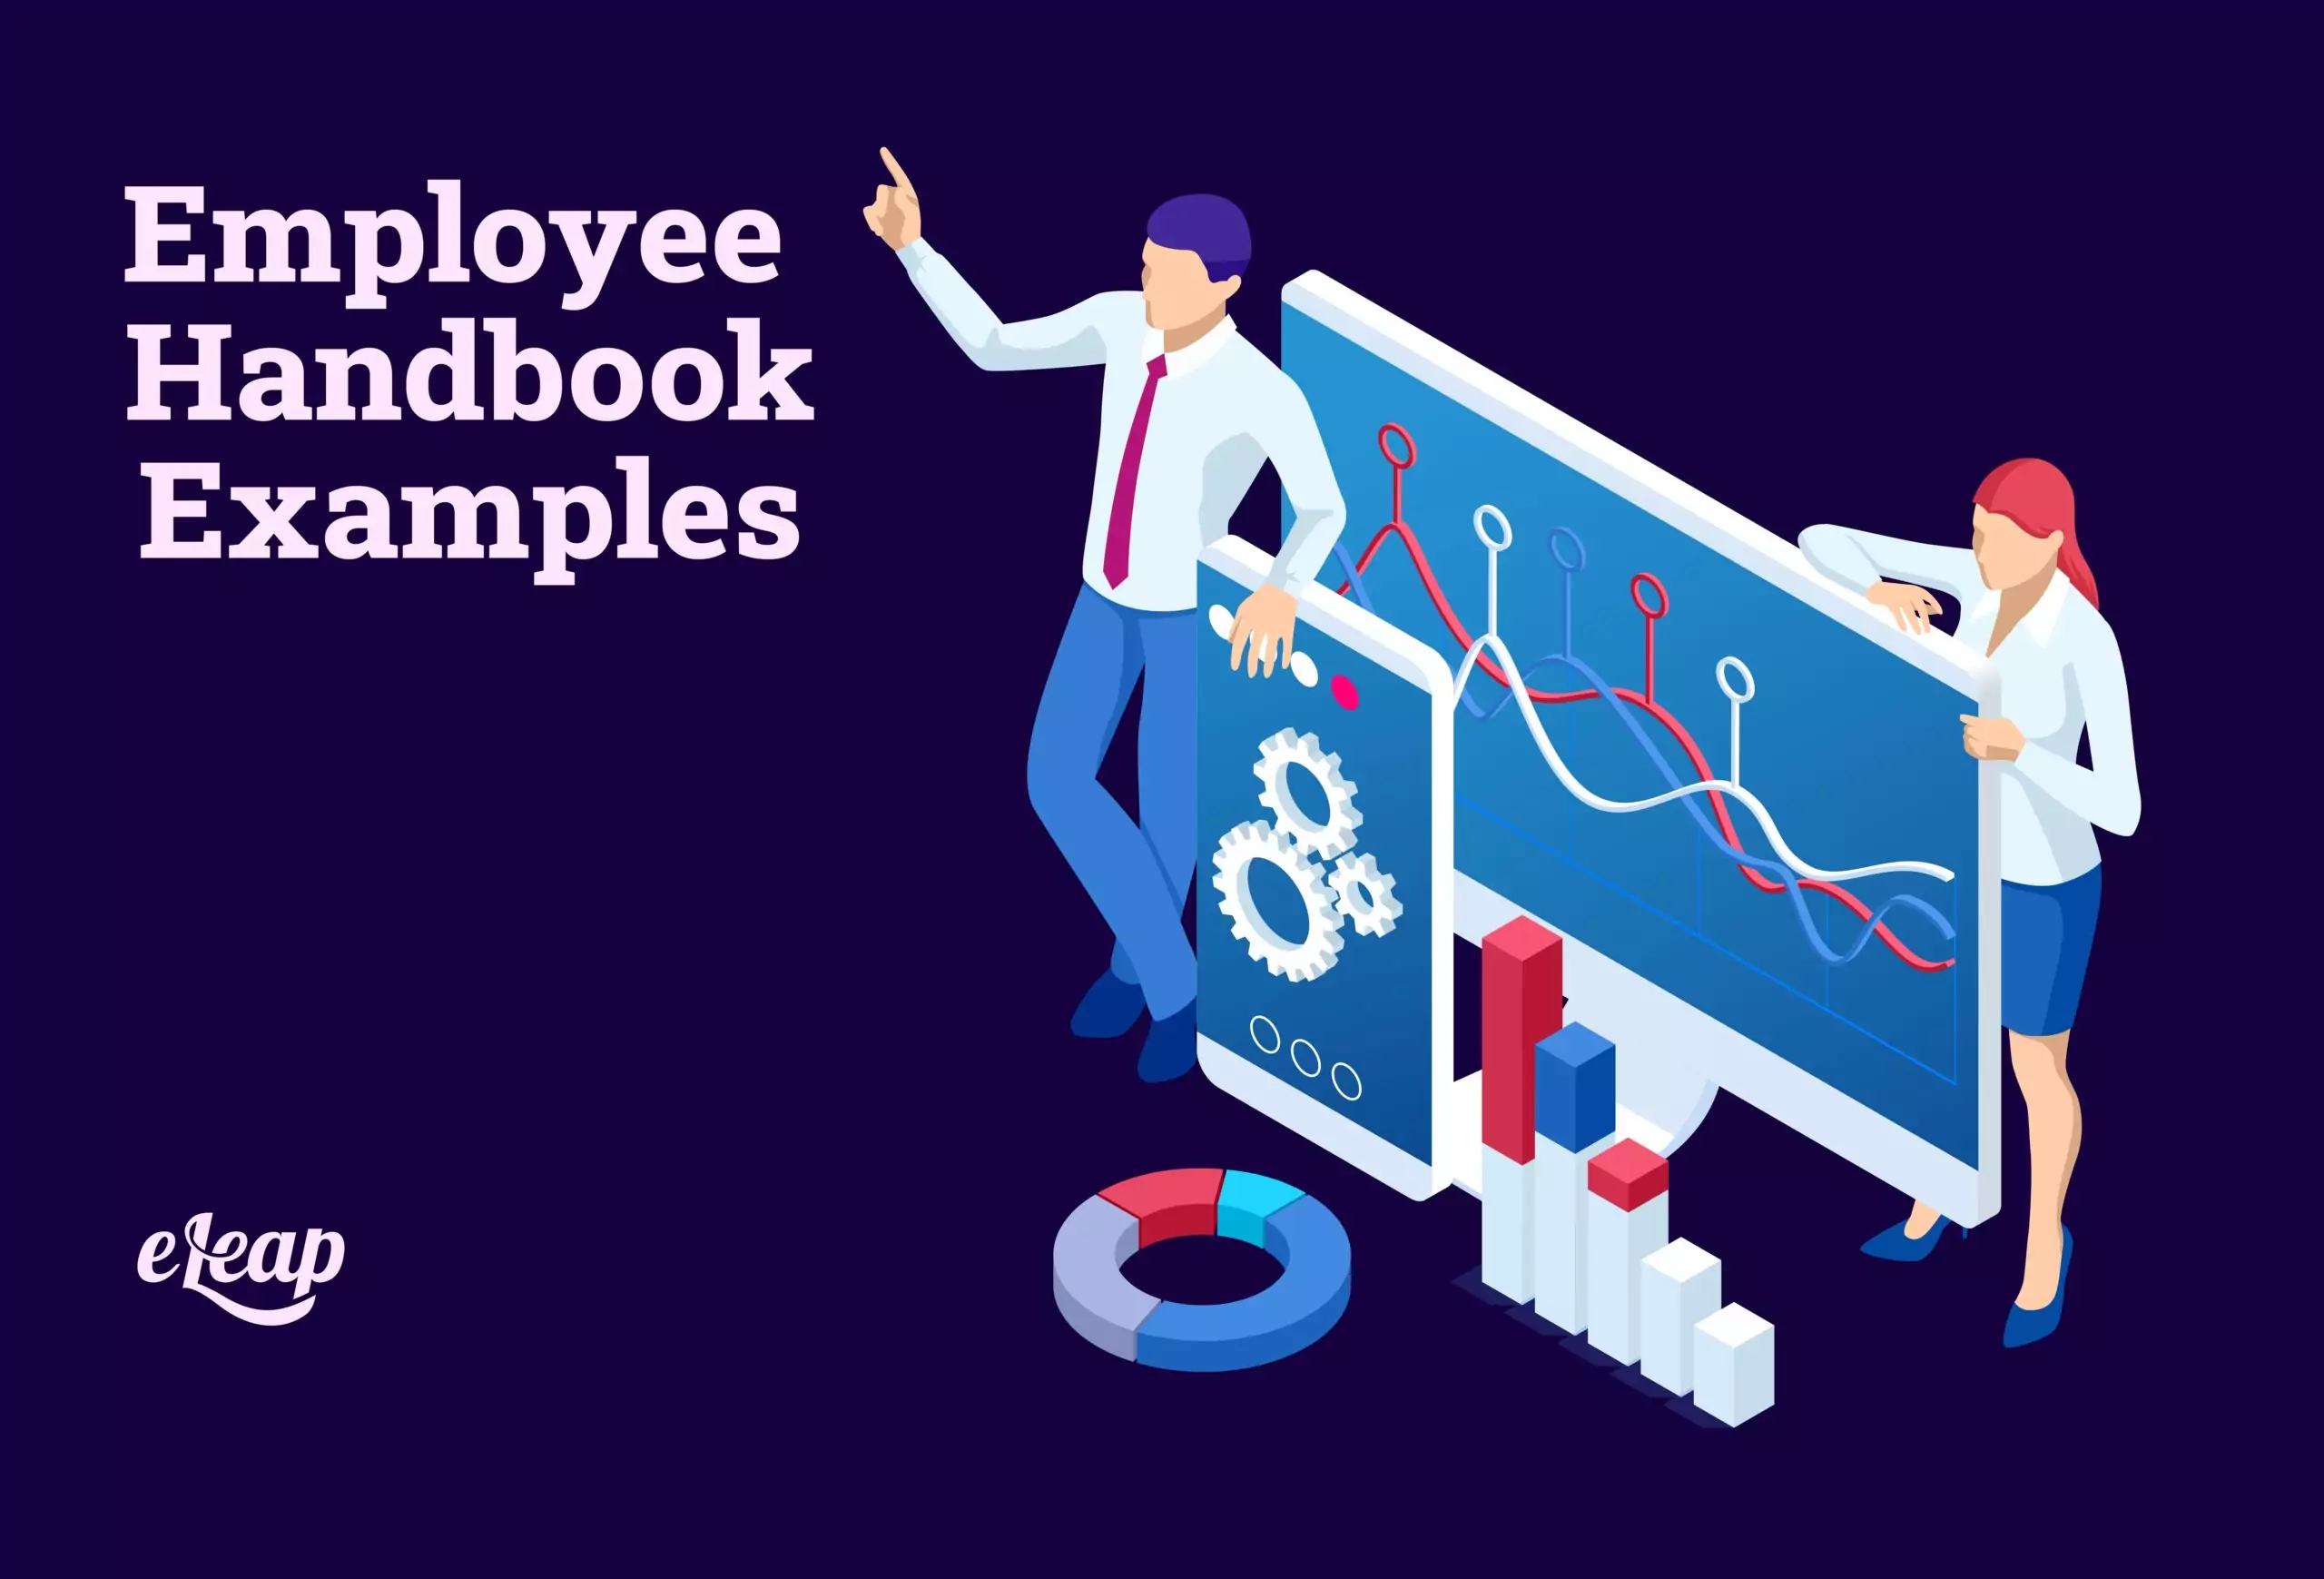 Employee Handbook Examples